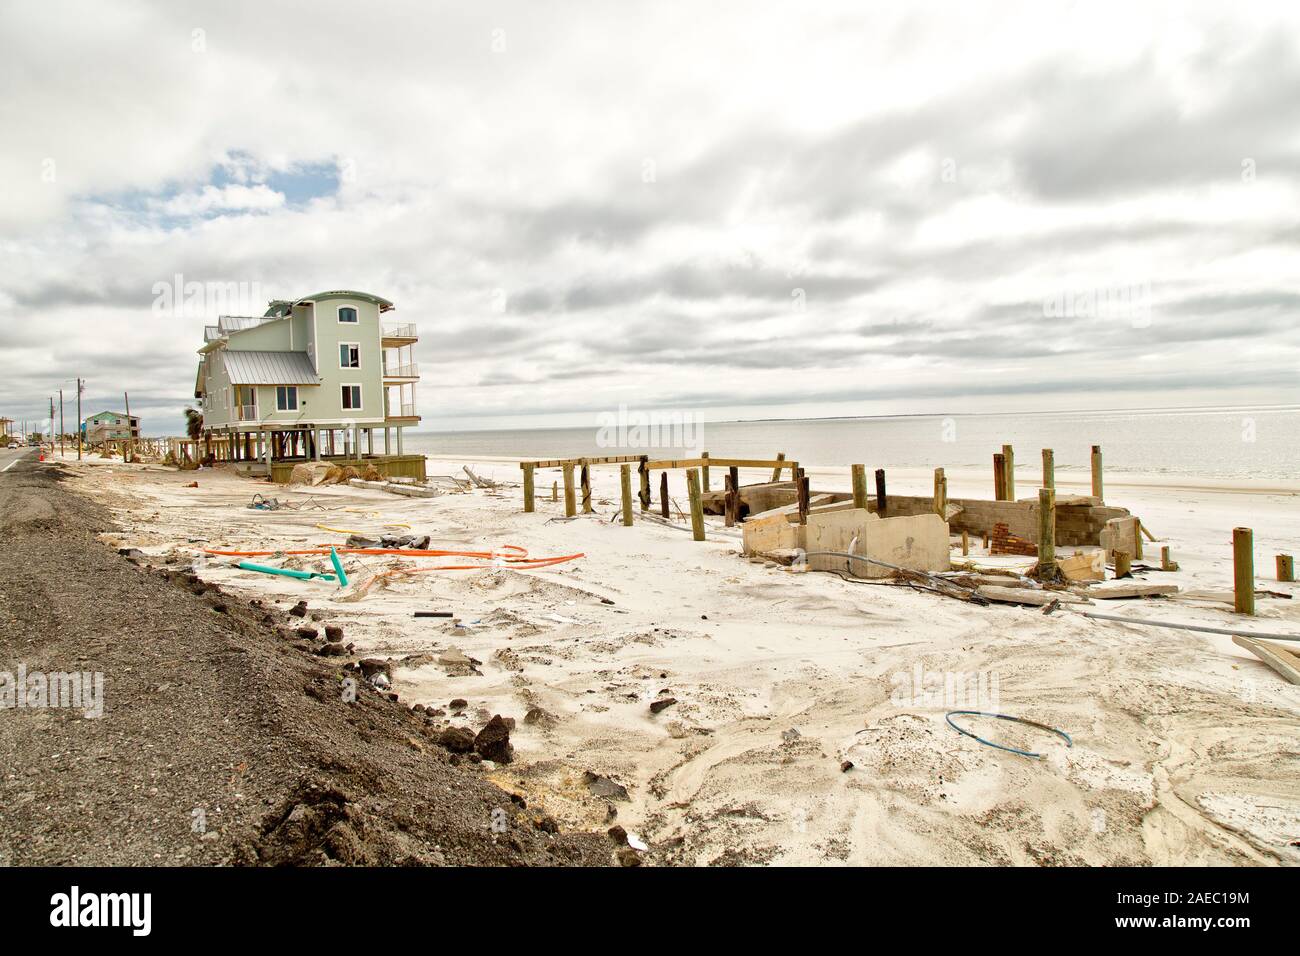 Freie Strandgrundstück mit verbleibenden unterstützenden Stiftungen von verlorene Heimat, die sich aus der Hurrikan 'Michael' Zerstörung 2018. Stockfoto